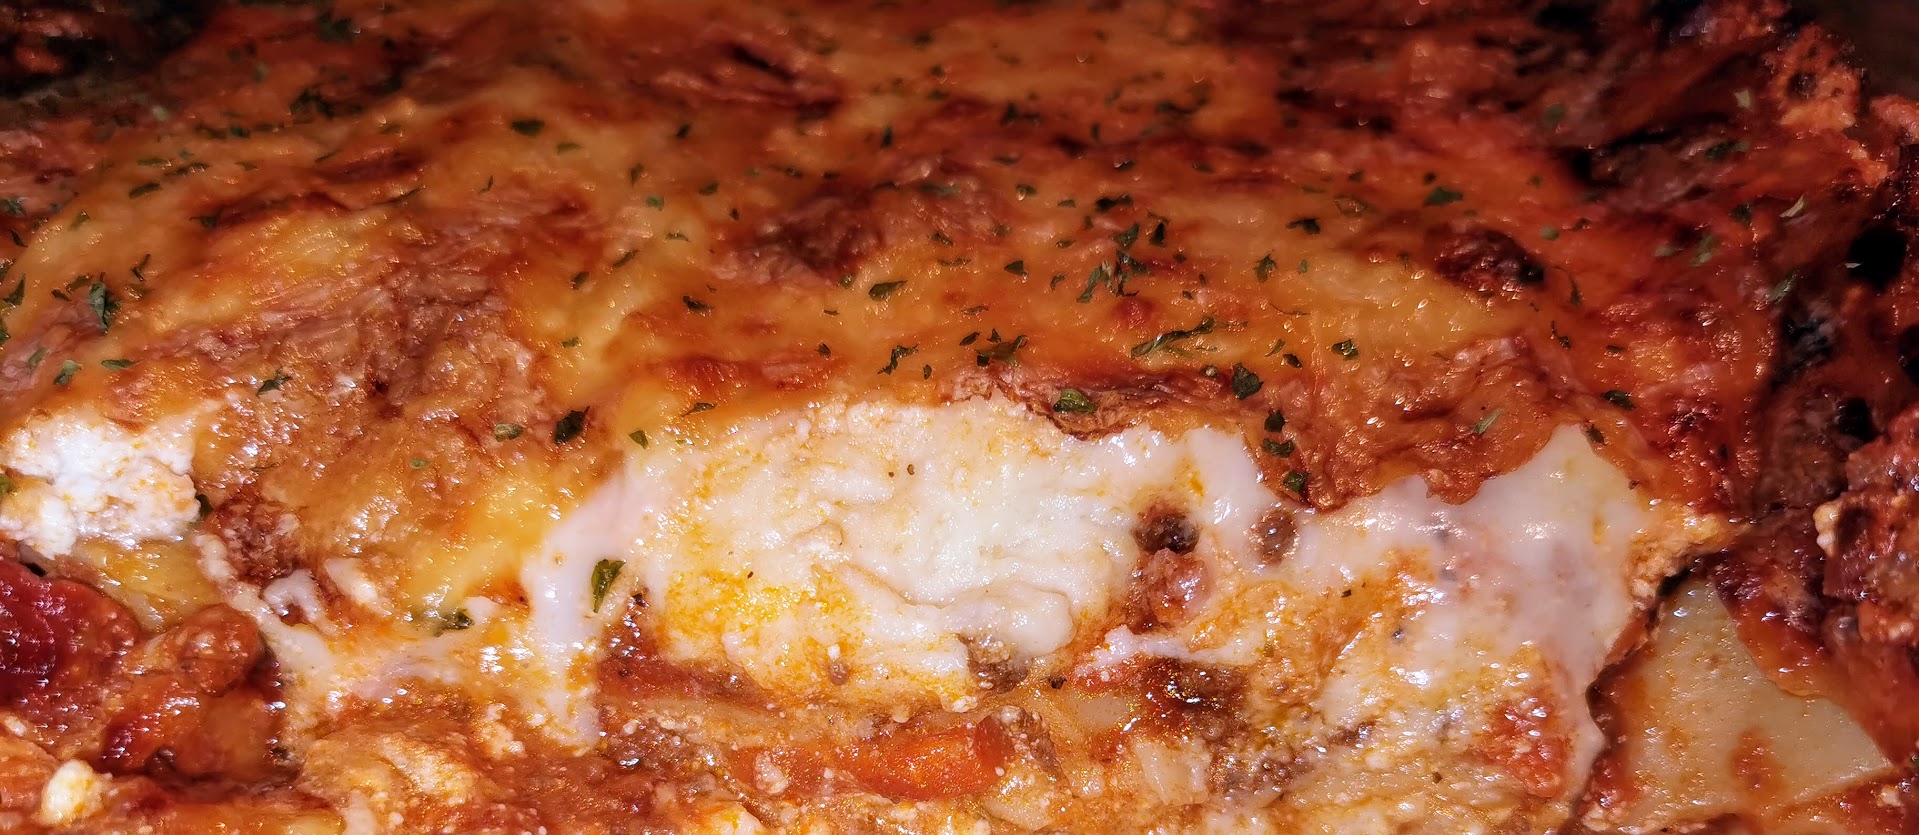 worlds best lasagna